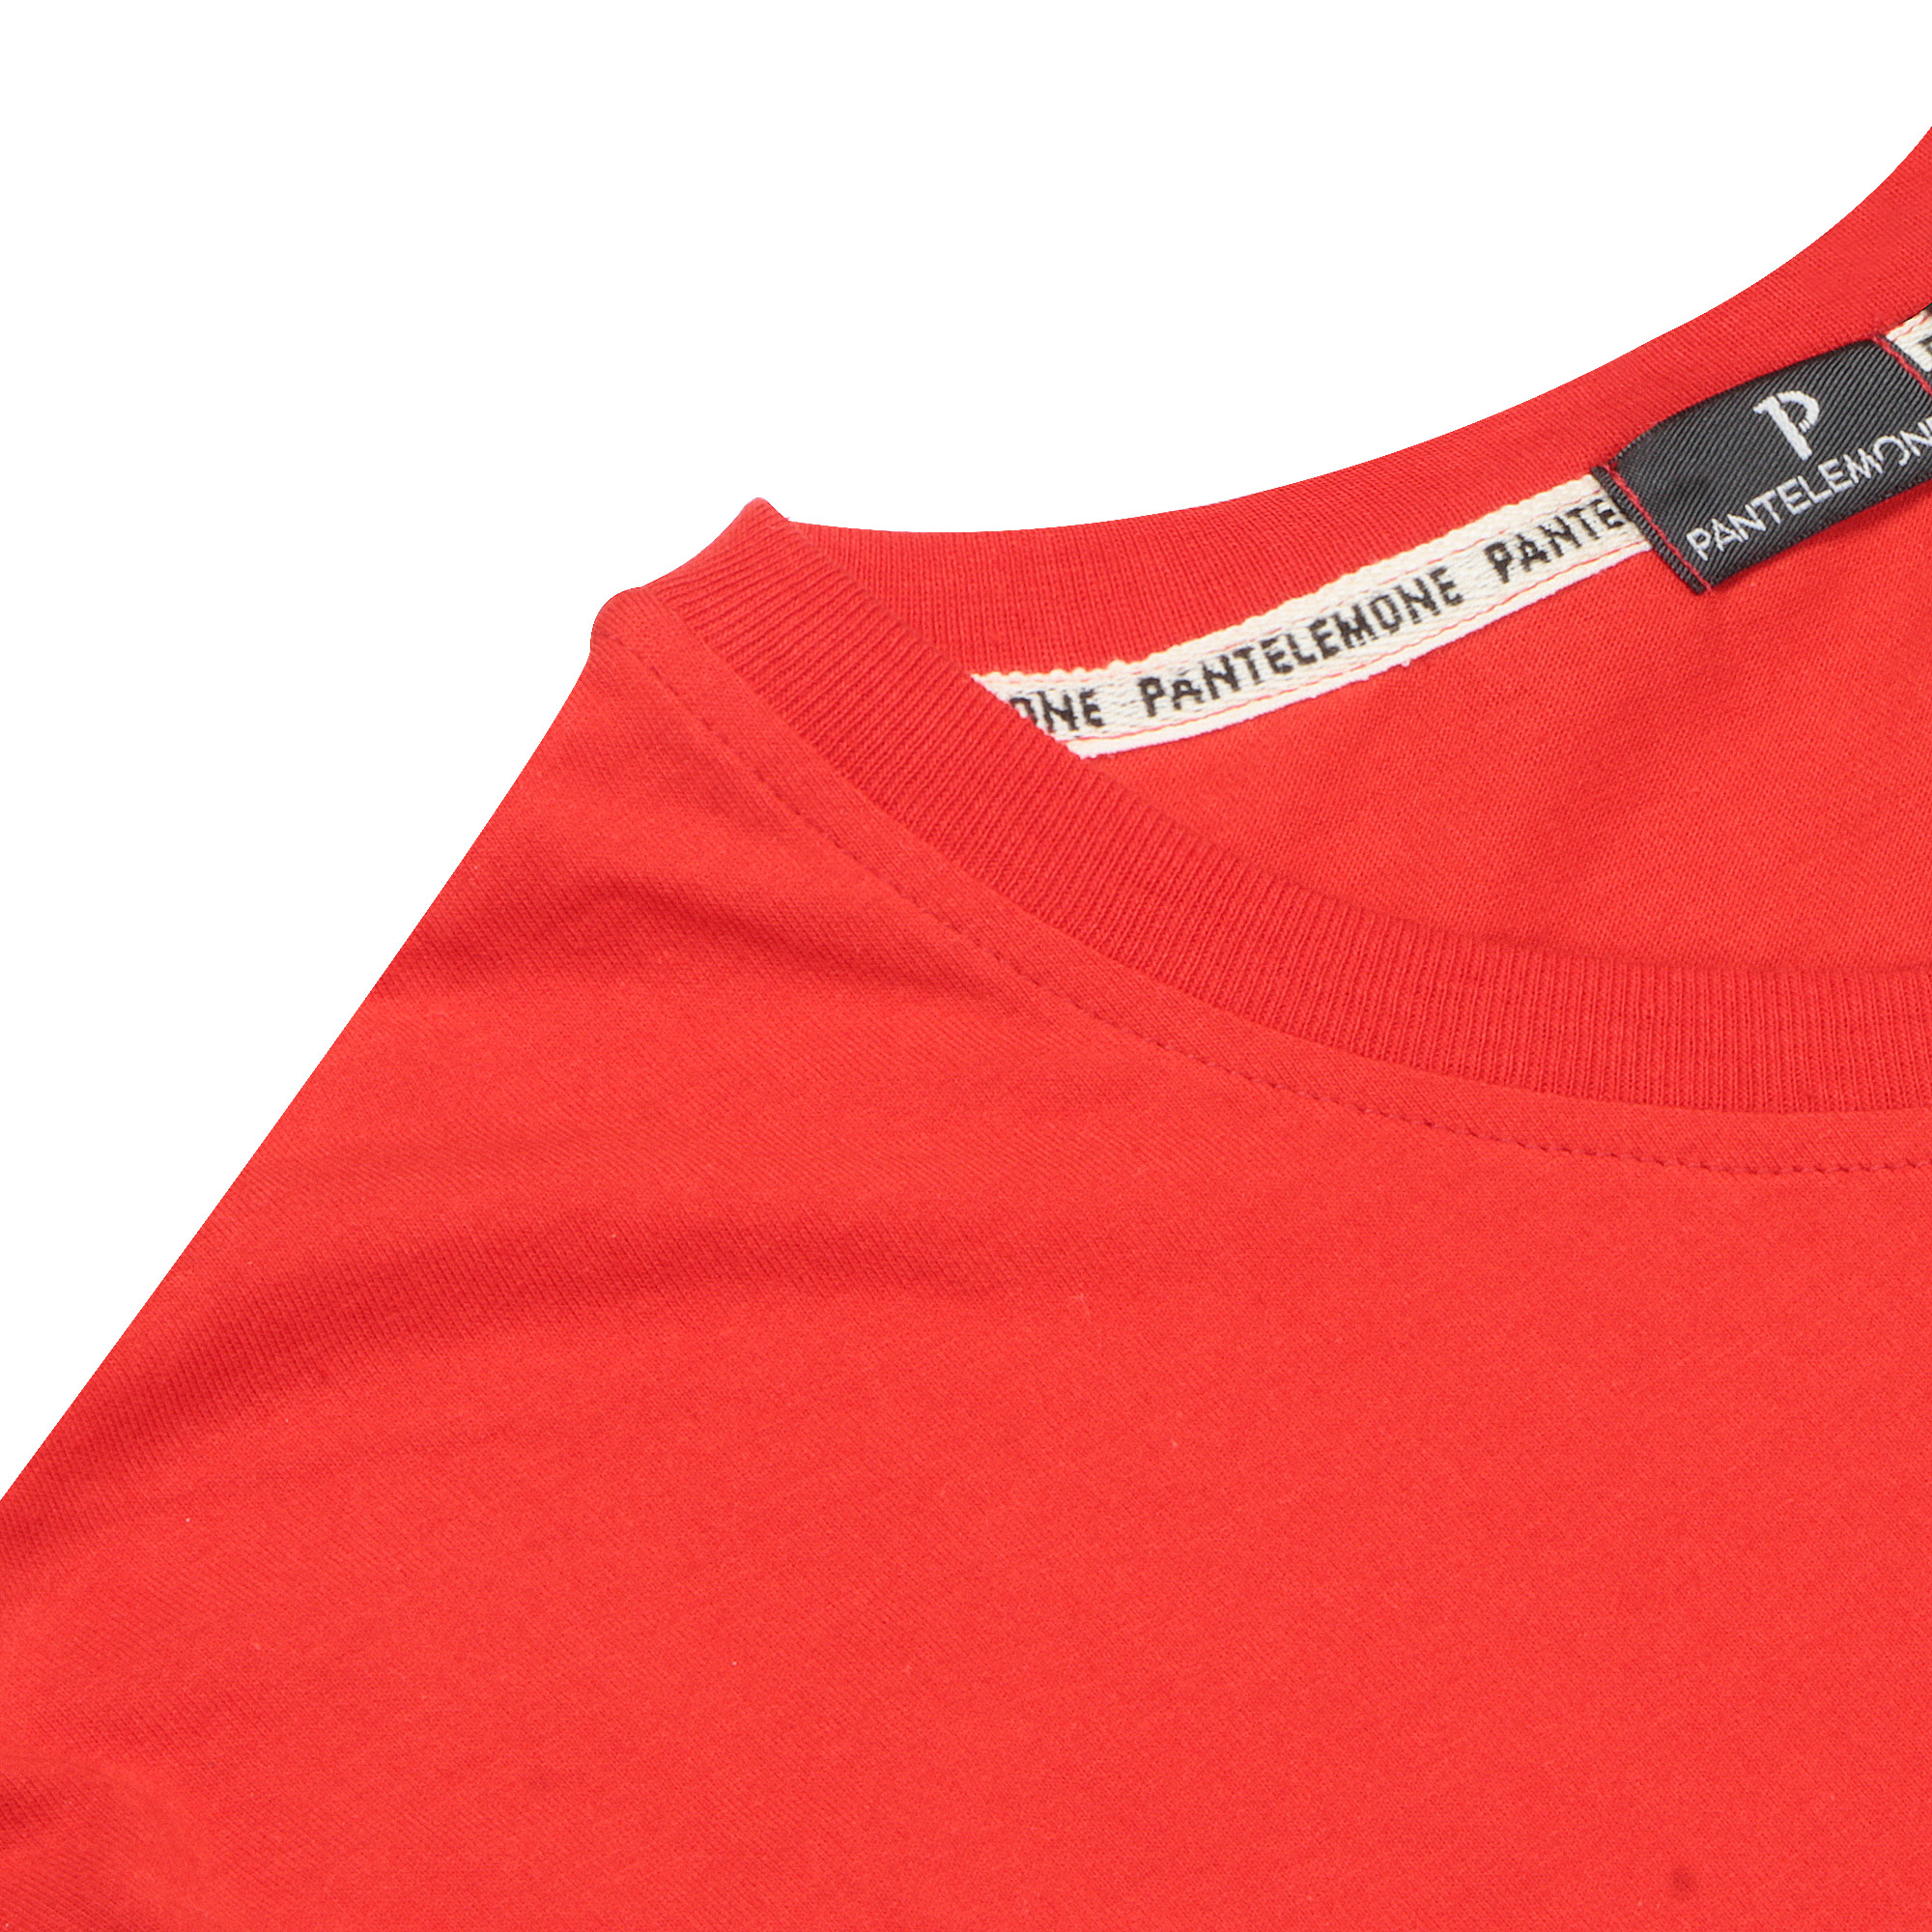 Мужская футболка Pantelemone MF-898 красная 52, цвет красный, размер 52 - фото 3